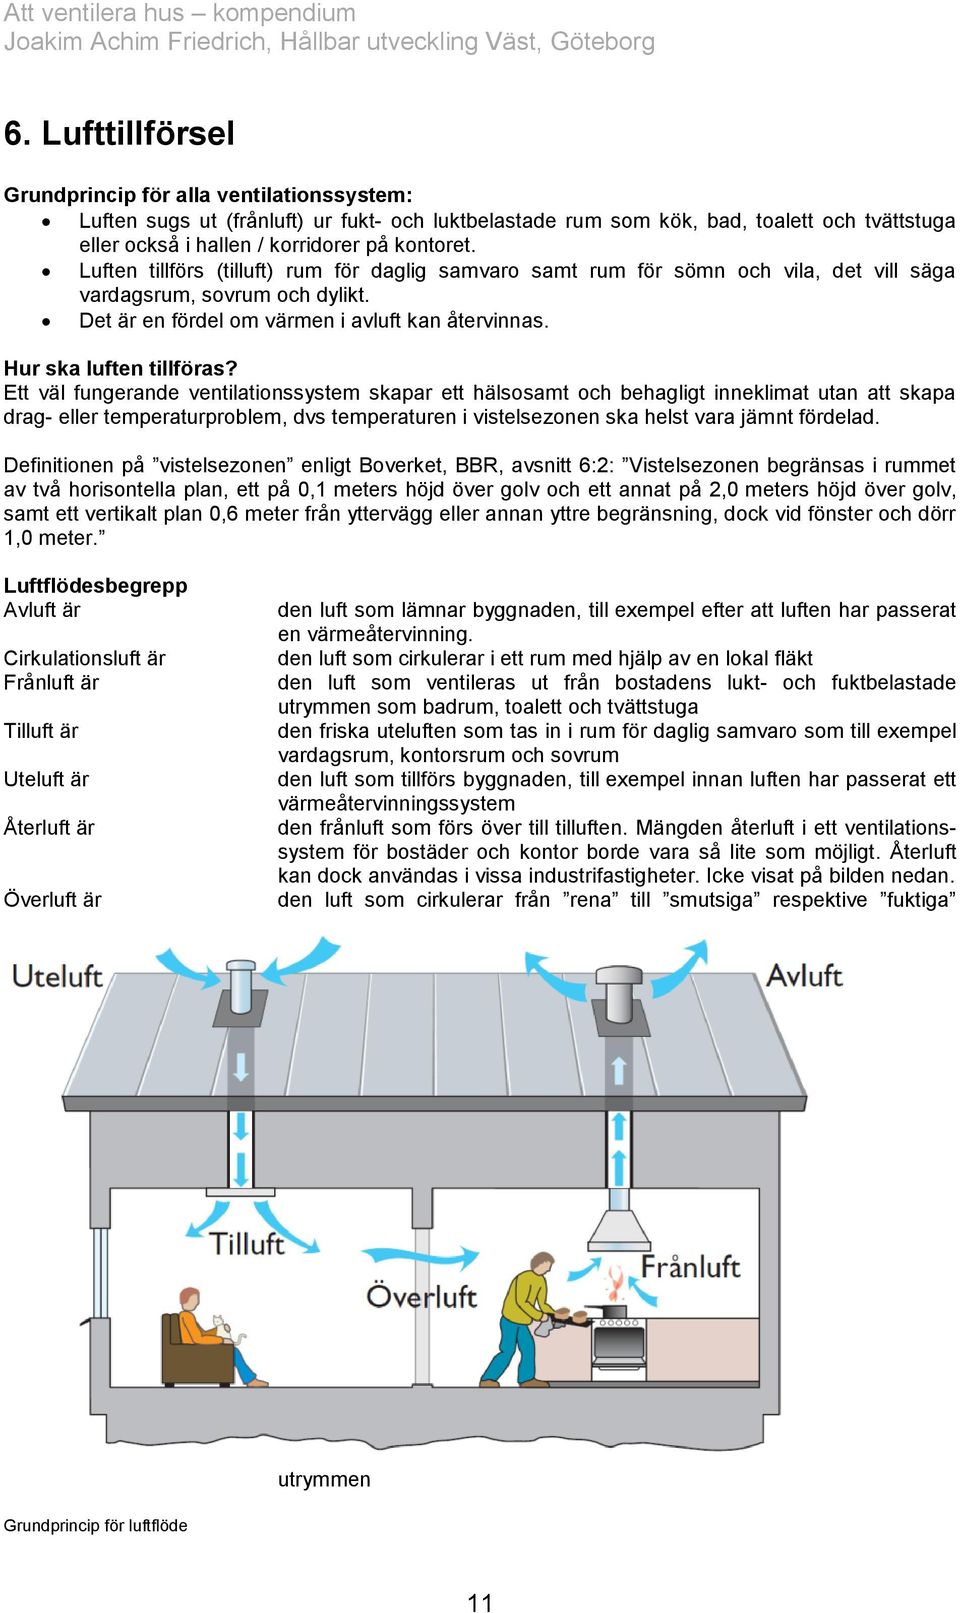 Att ventilera hus. Kompendium. Fakta och bakgrund om ventilation av hus och  lägenheter - PDF Free Download